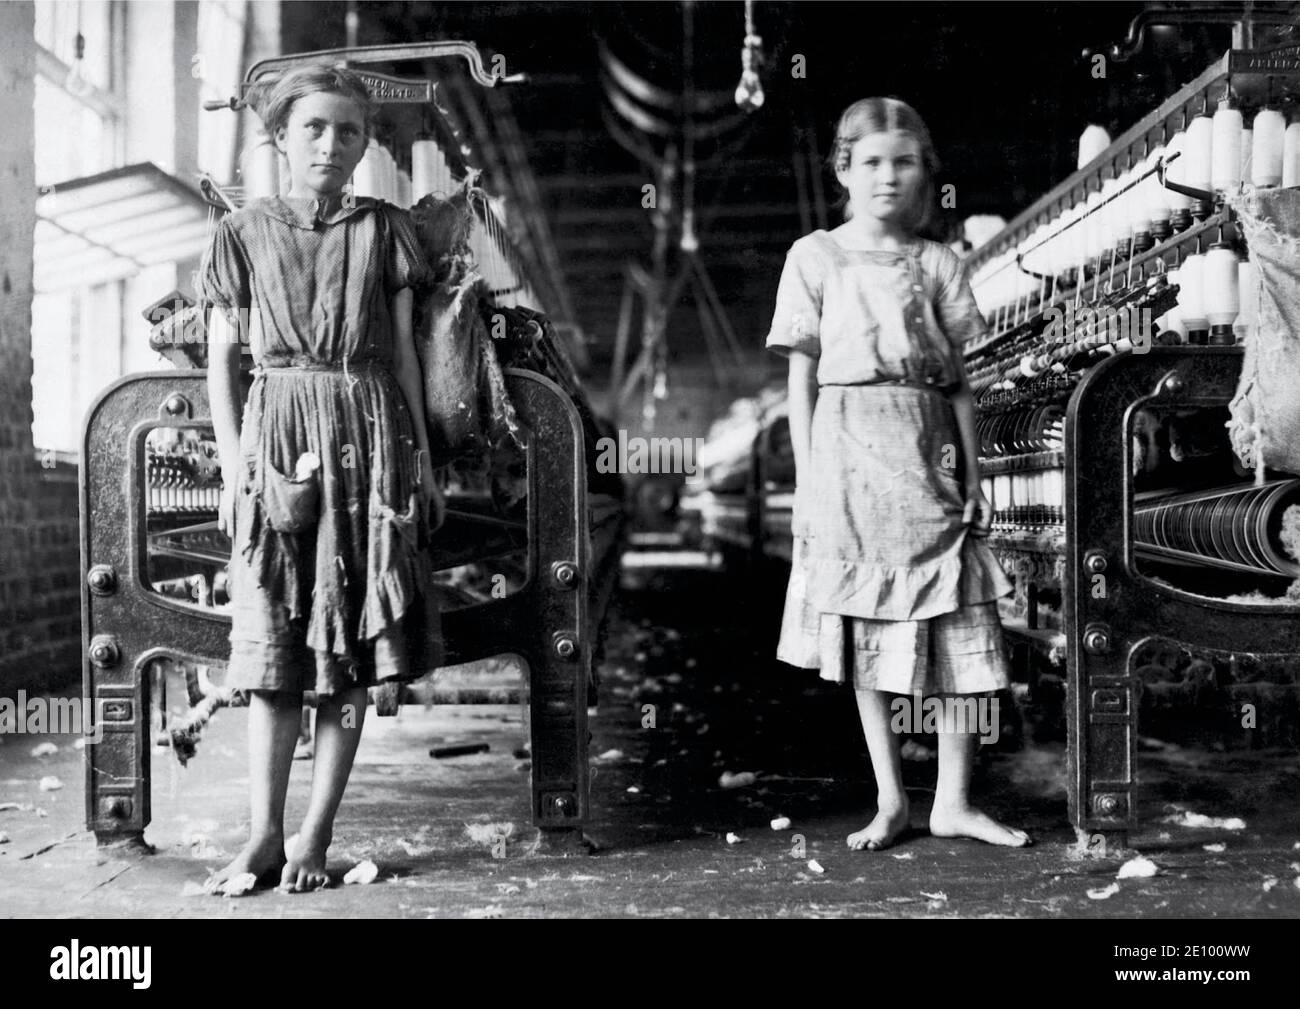 Fotografía de Lewis Hine Vintage titulada Spinners in a Cotton Mill de 1911, destacando la edad joven de muchos trabajadores de molinos estadounidenses. Foto de stock